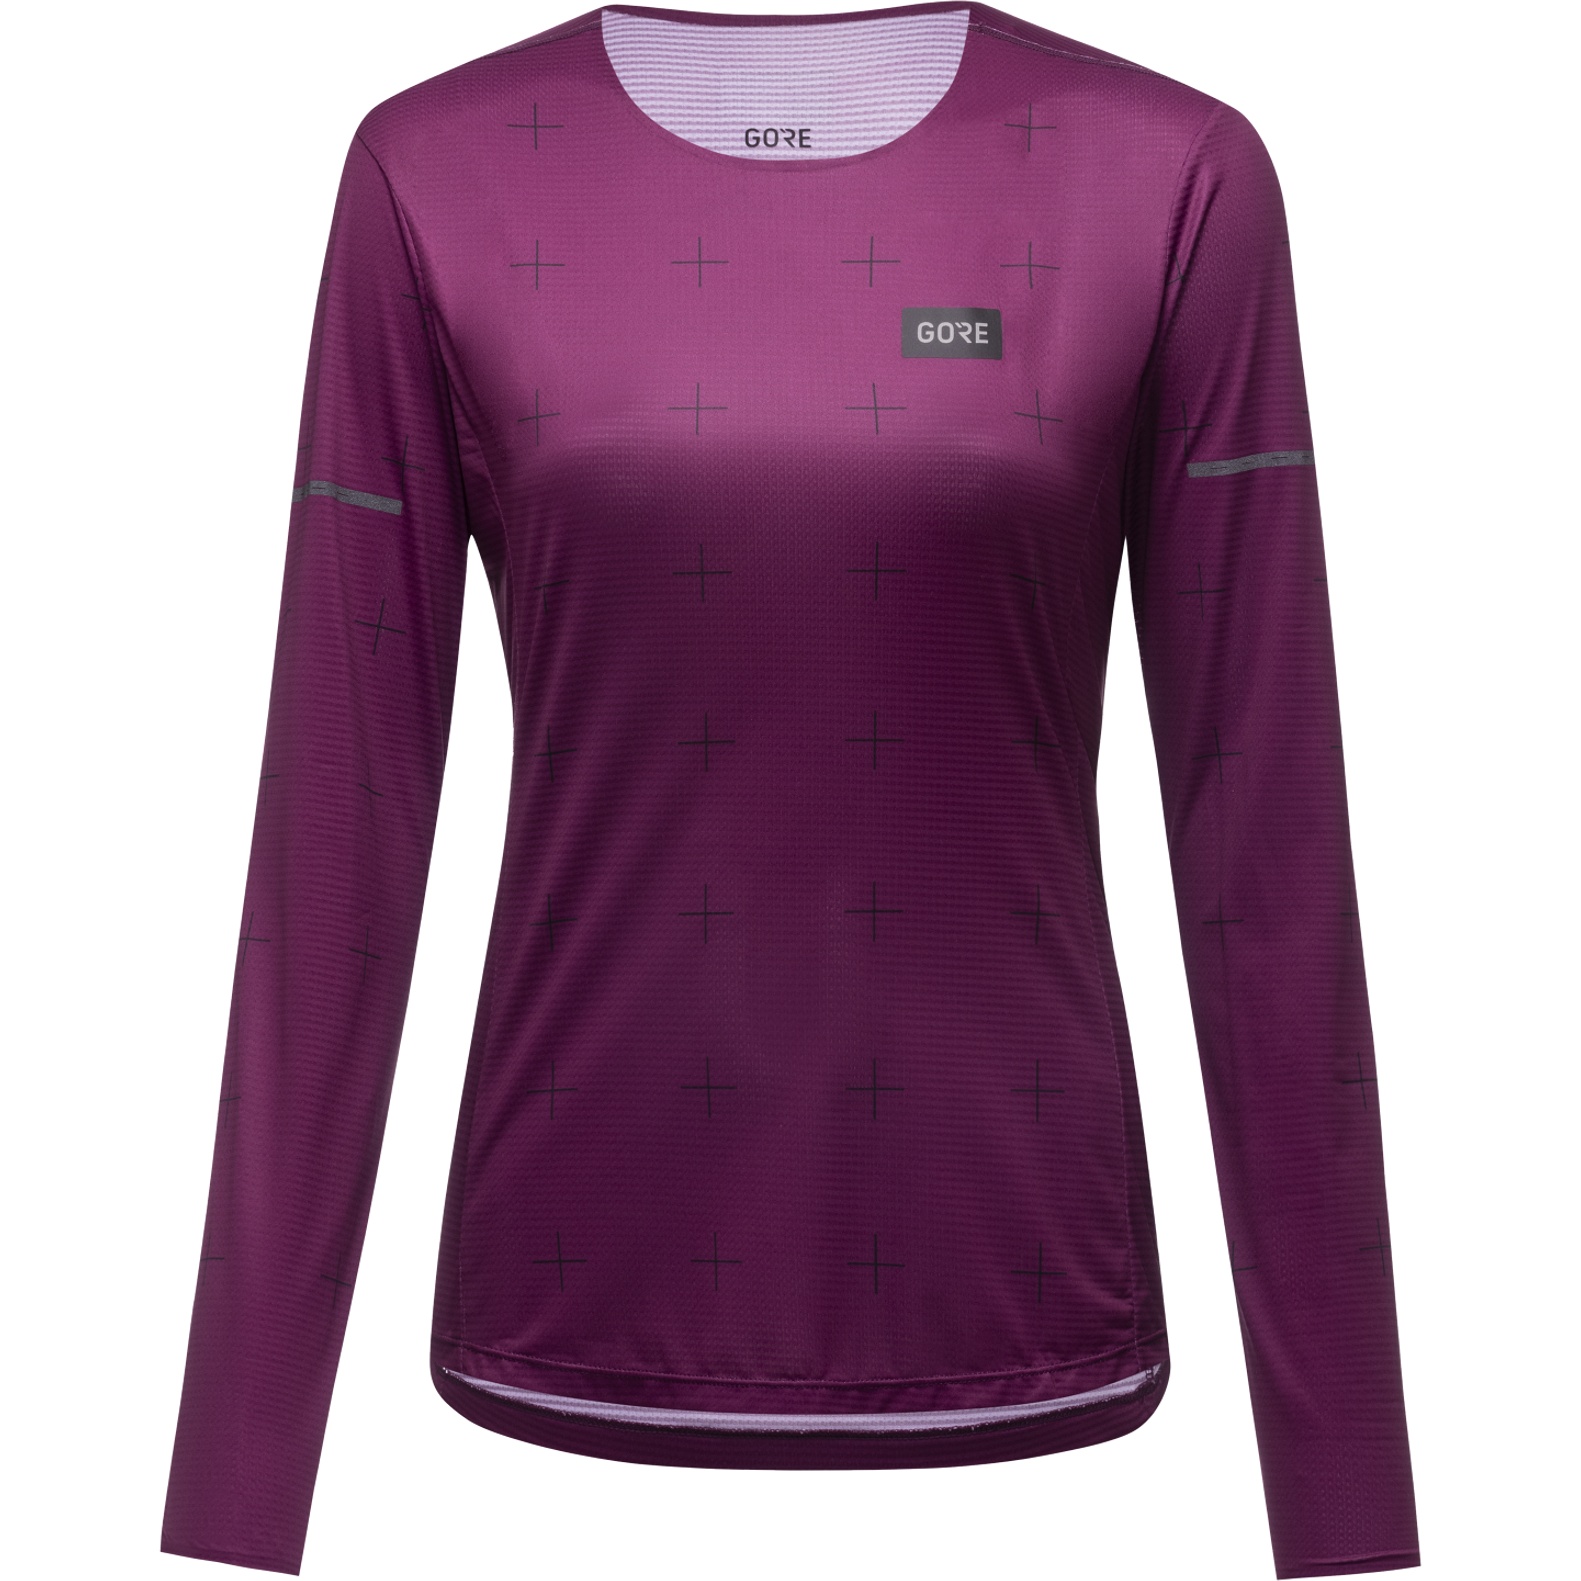 Produktbild von GOREWEAR Contest Langarm-Shirt Damen - process purple BQ00